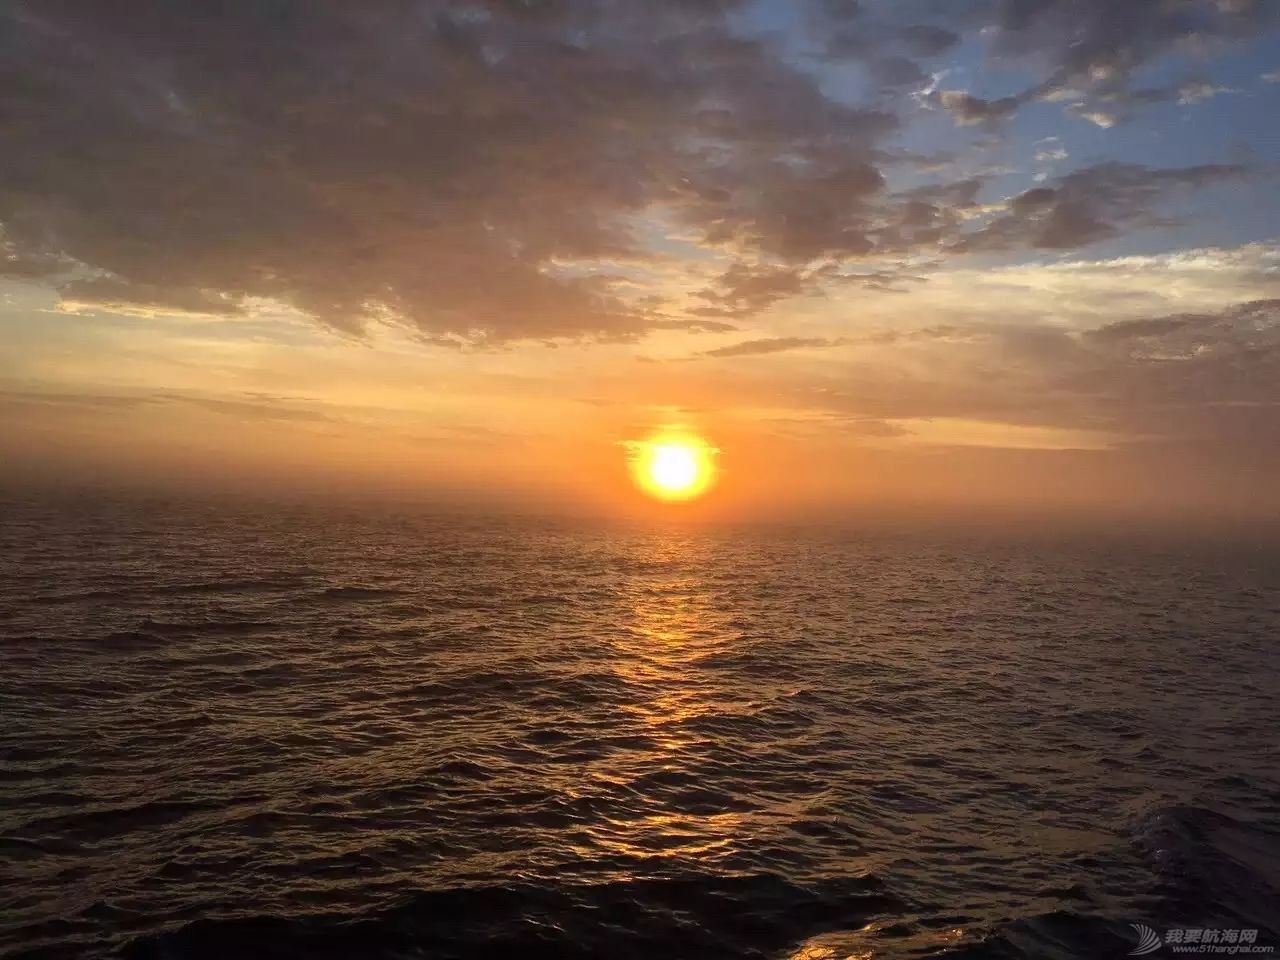 太阳初升时,忽然有十万支金喇叭齐鸣!我在帆船上迎接黎明……w15.jpg